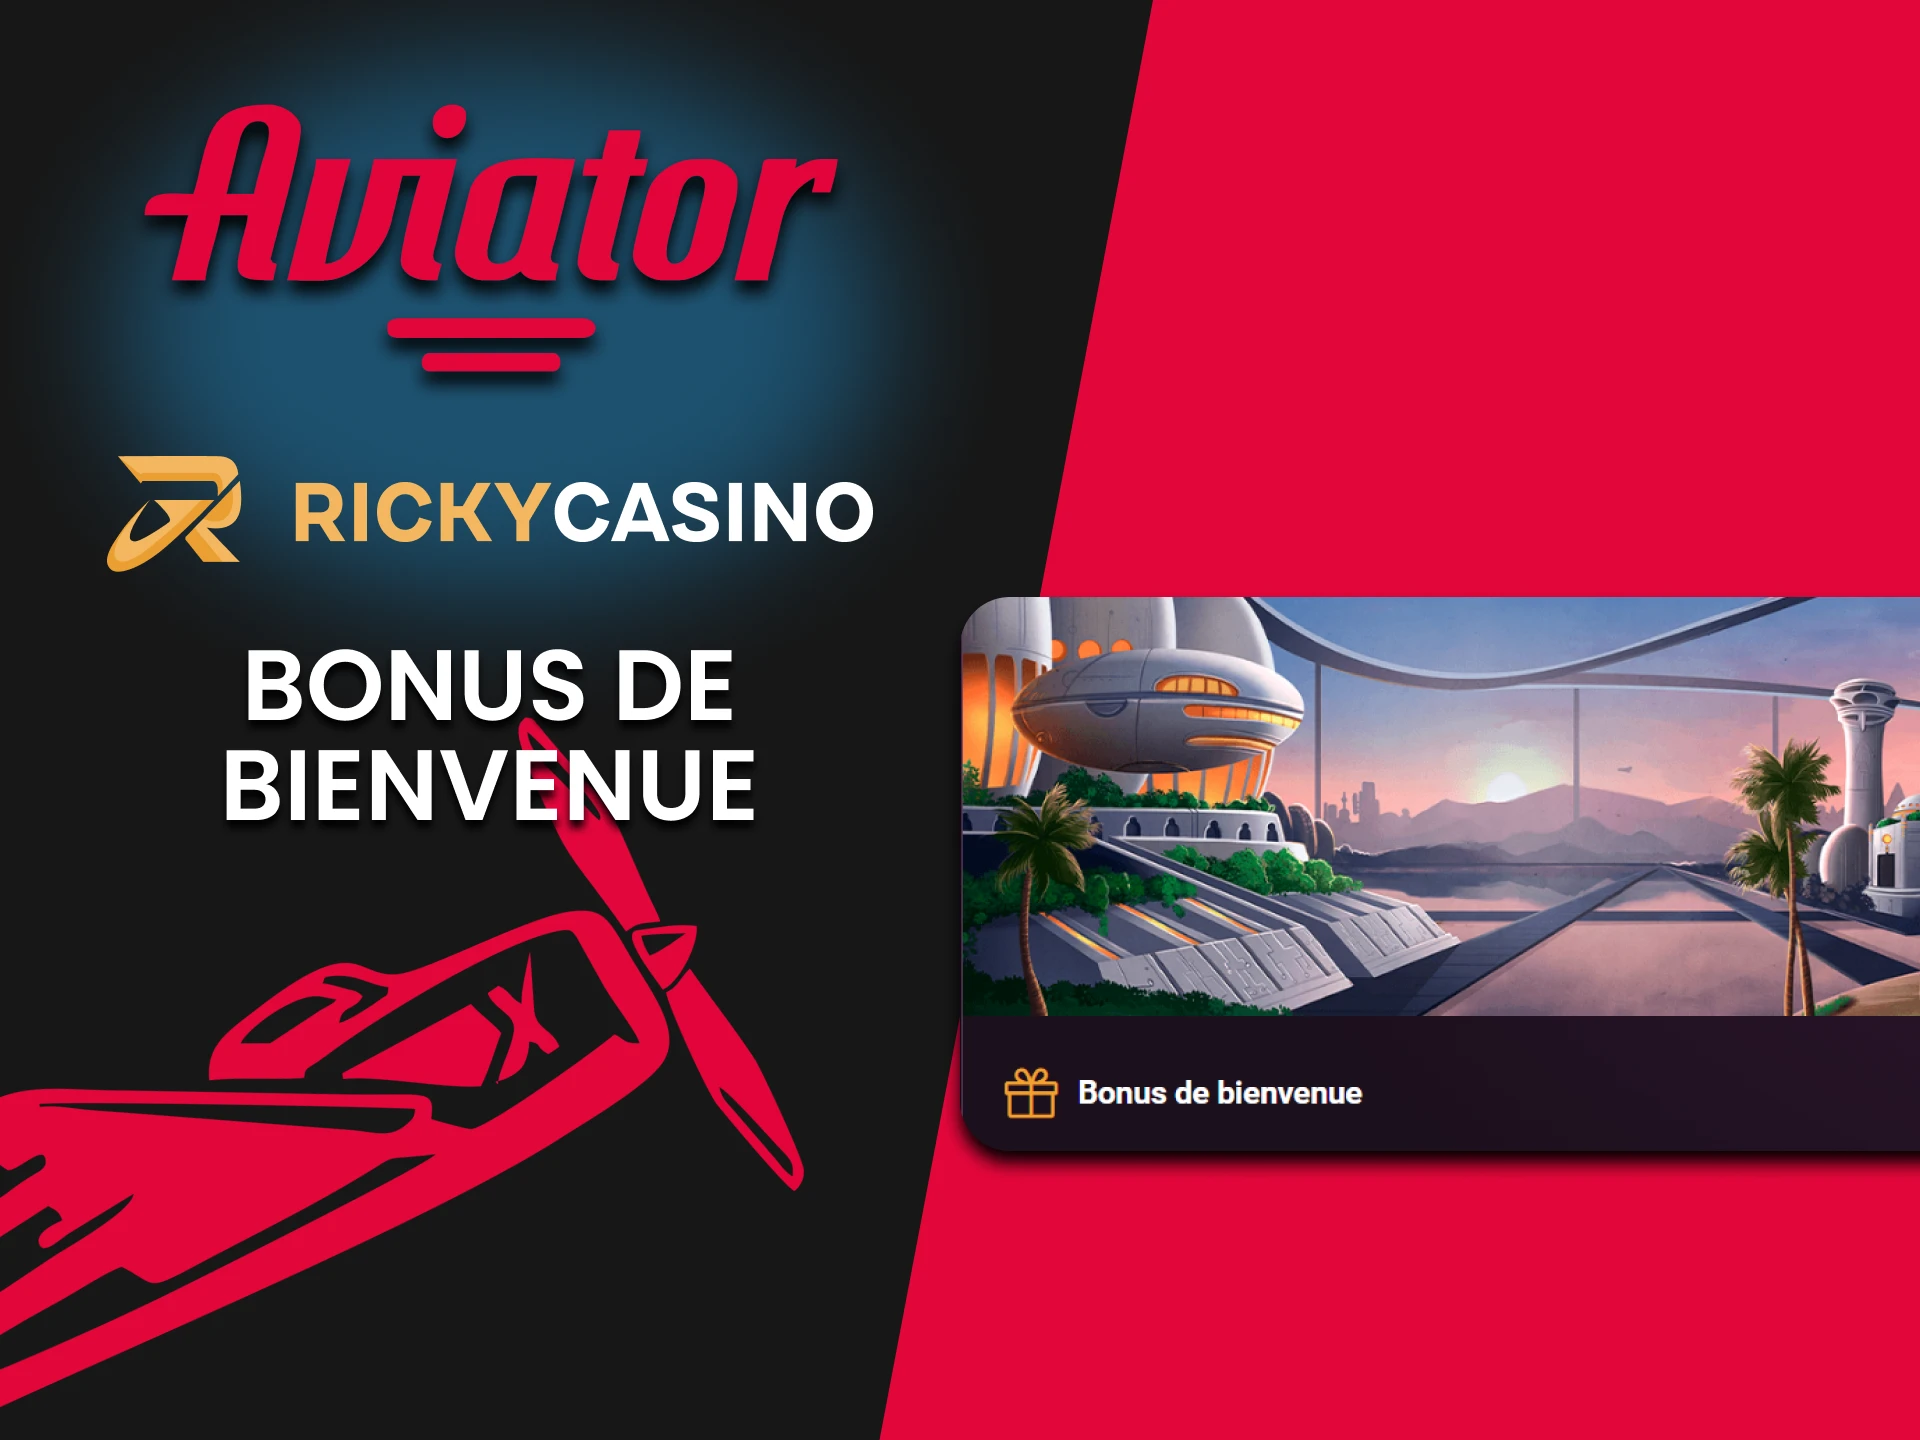 Ricky Casino offre un bonus de bienvenue à l'Aviator.